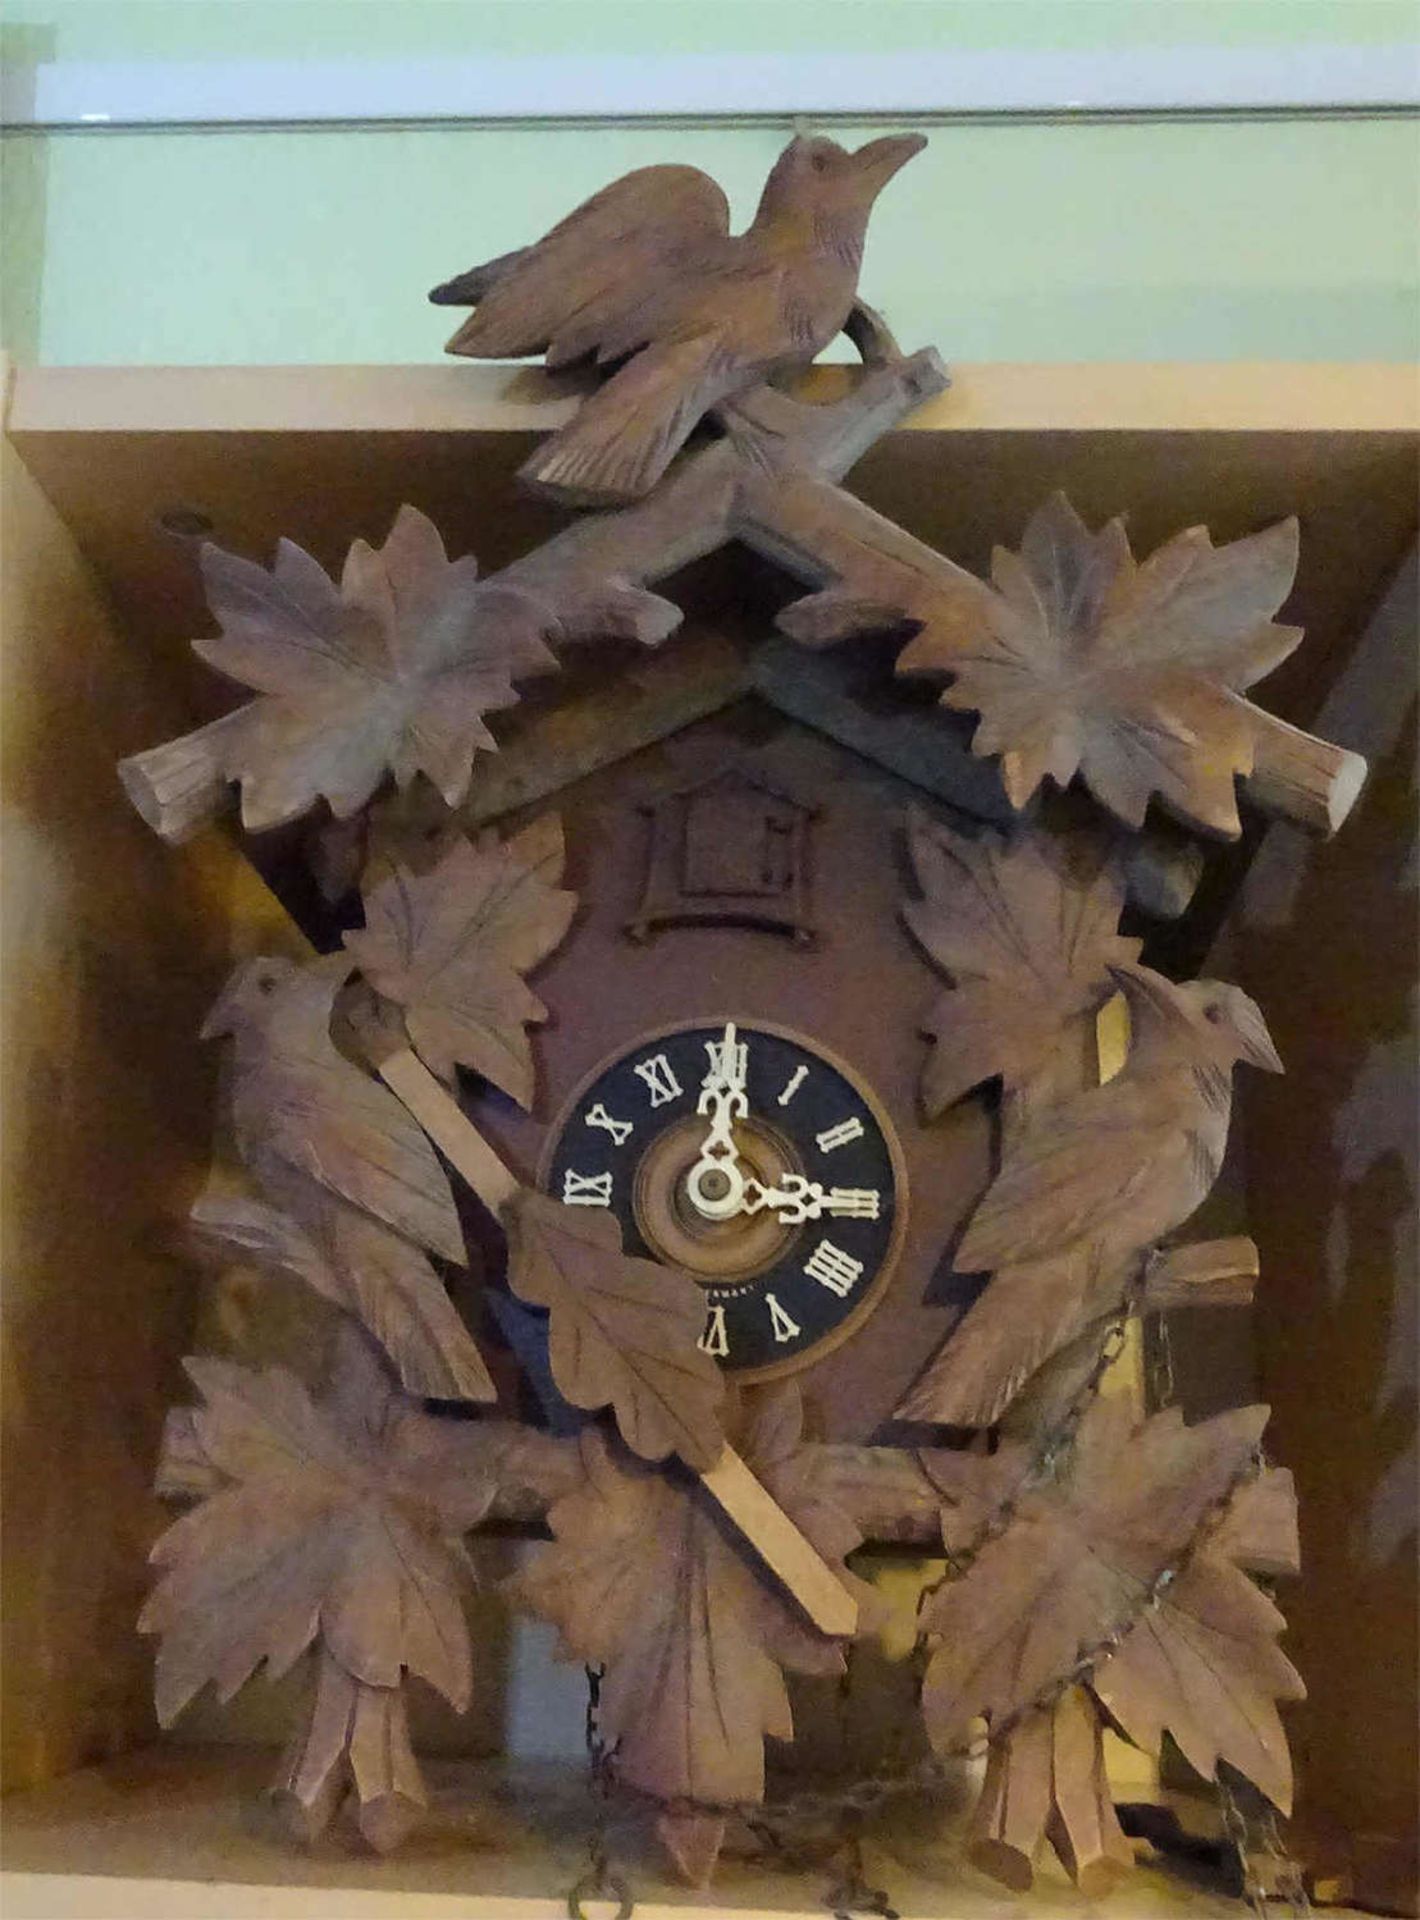 1 Kuckucksuhr zur Aufarbeitung. Bitte besichtigen. Höhe ca. 42 cm, breite ca. 30 cm1 cuckoo clock